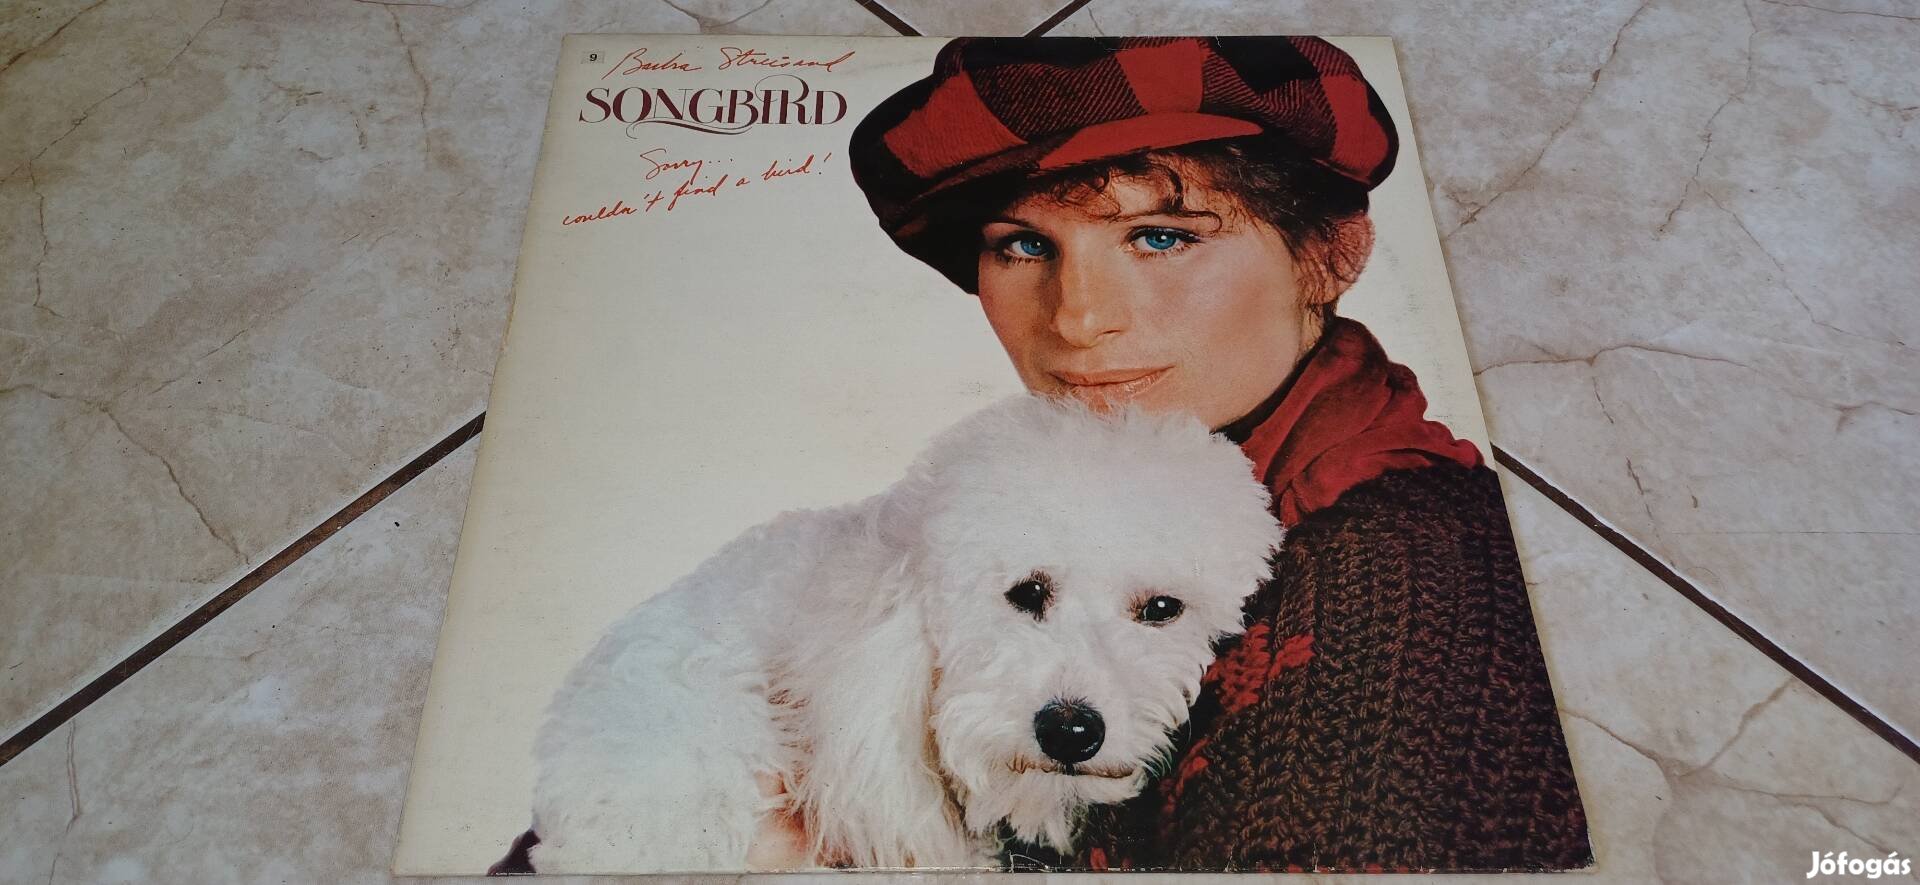 Barbra Streisand bakelit hanglemez